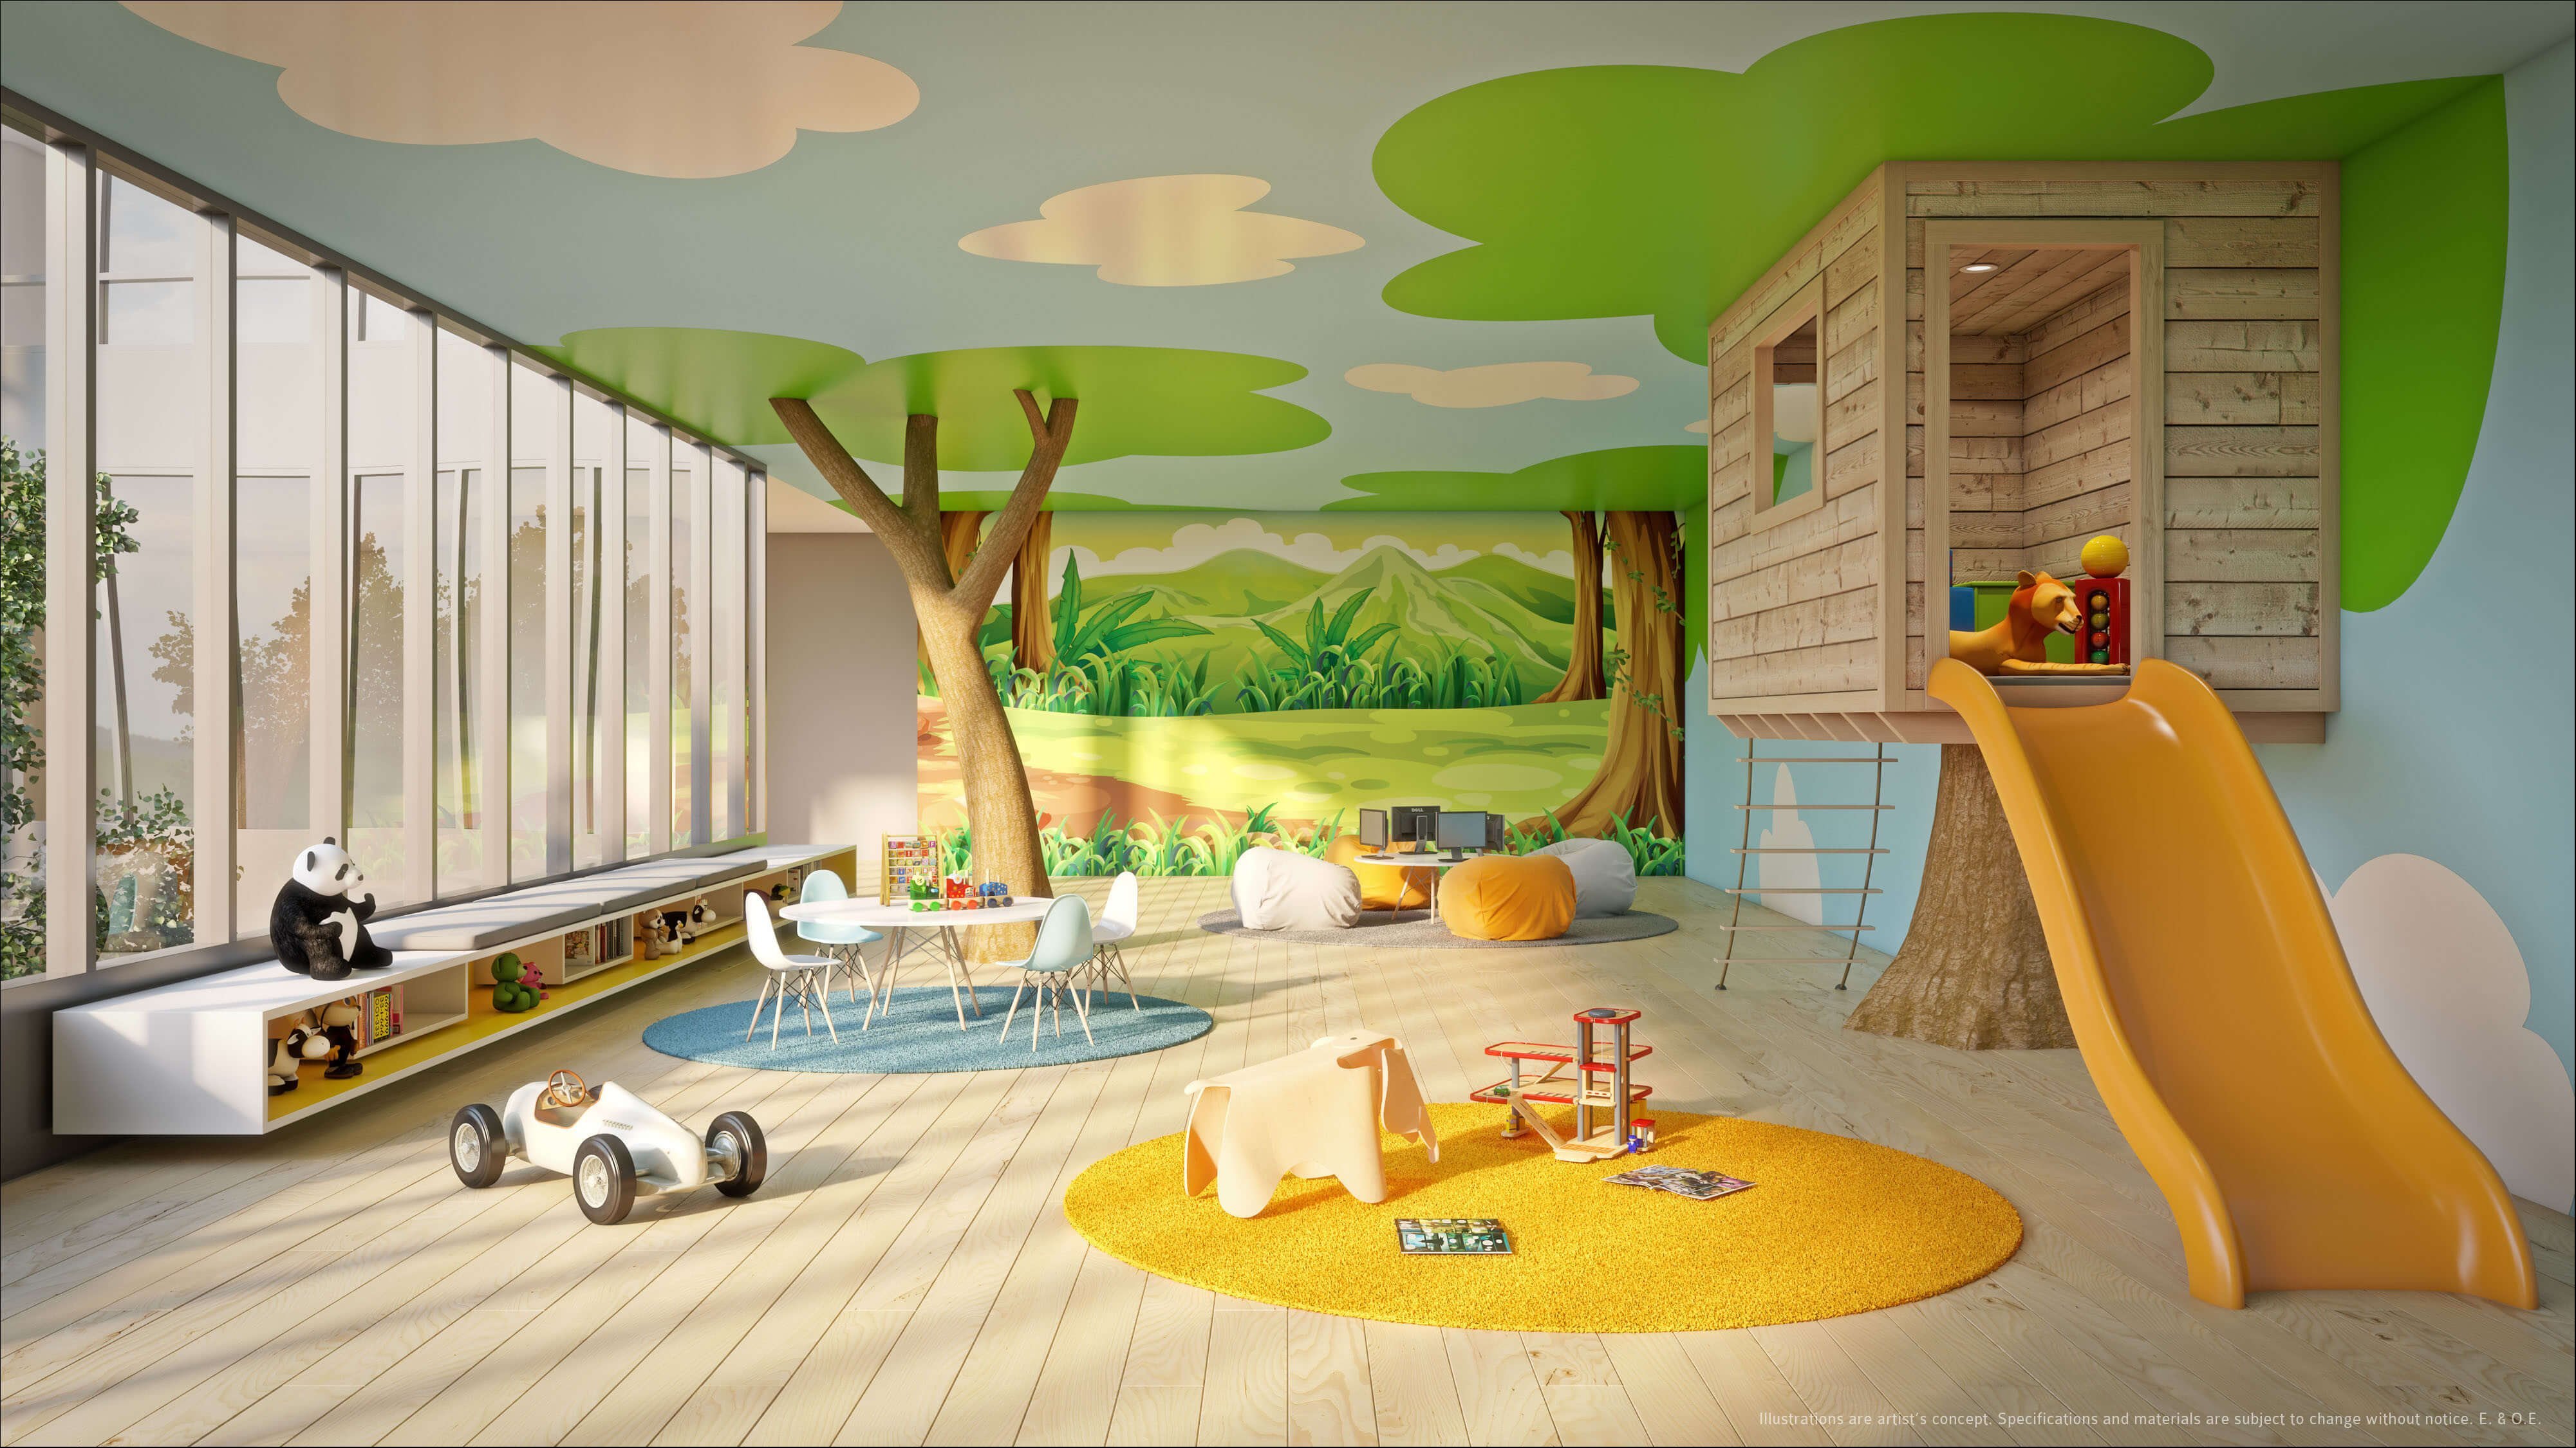 Игровая комната для детей в доме (69 фото)